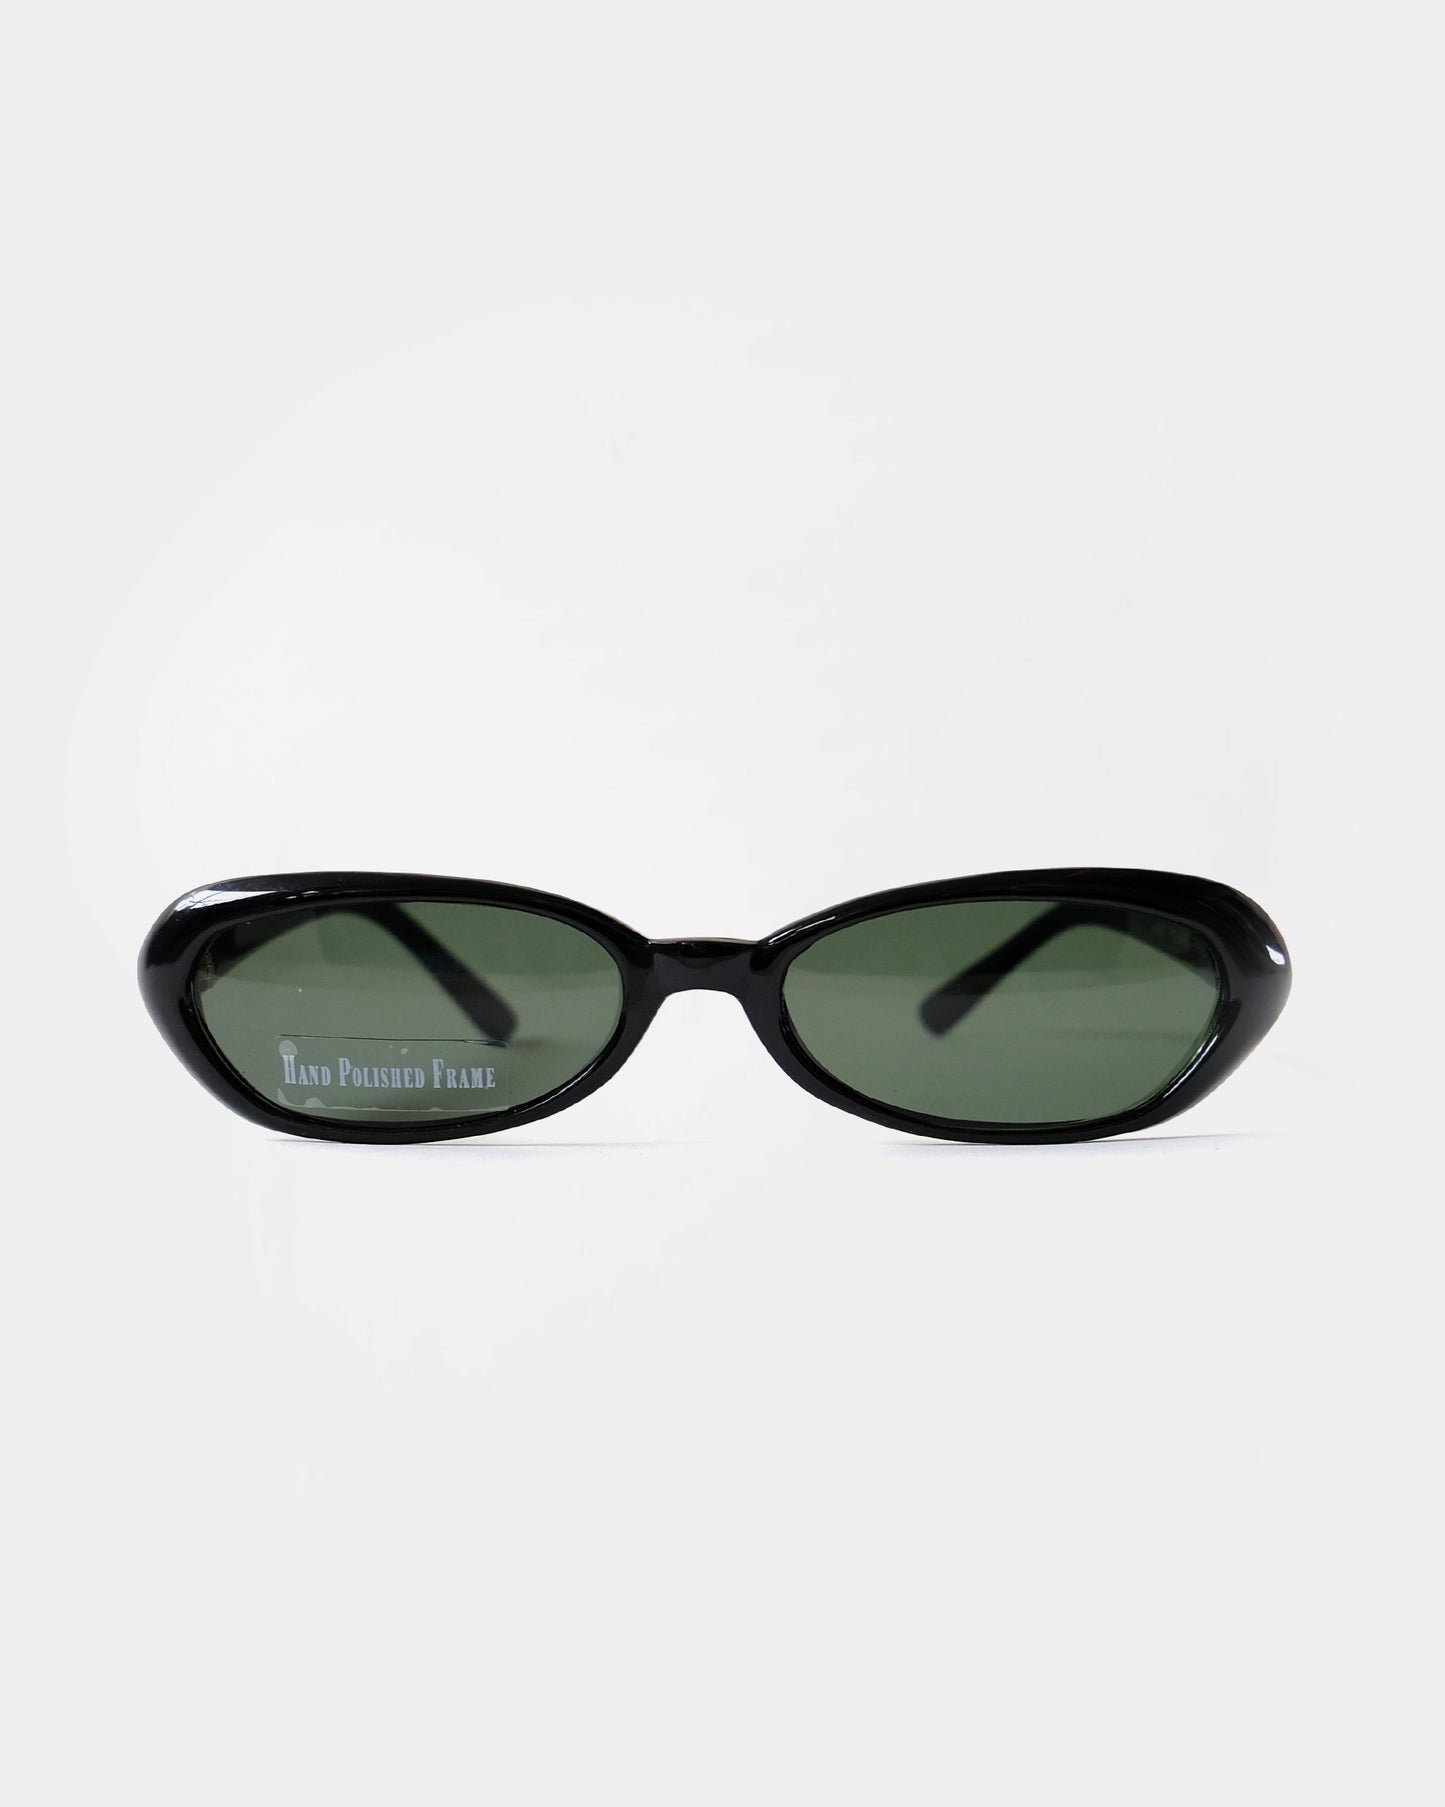 NOS 90s Frame sunglasses